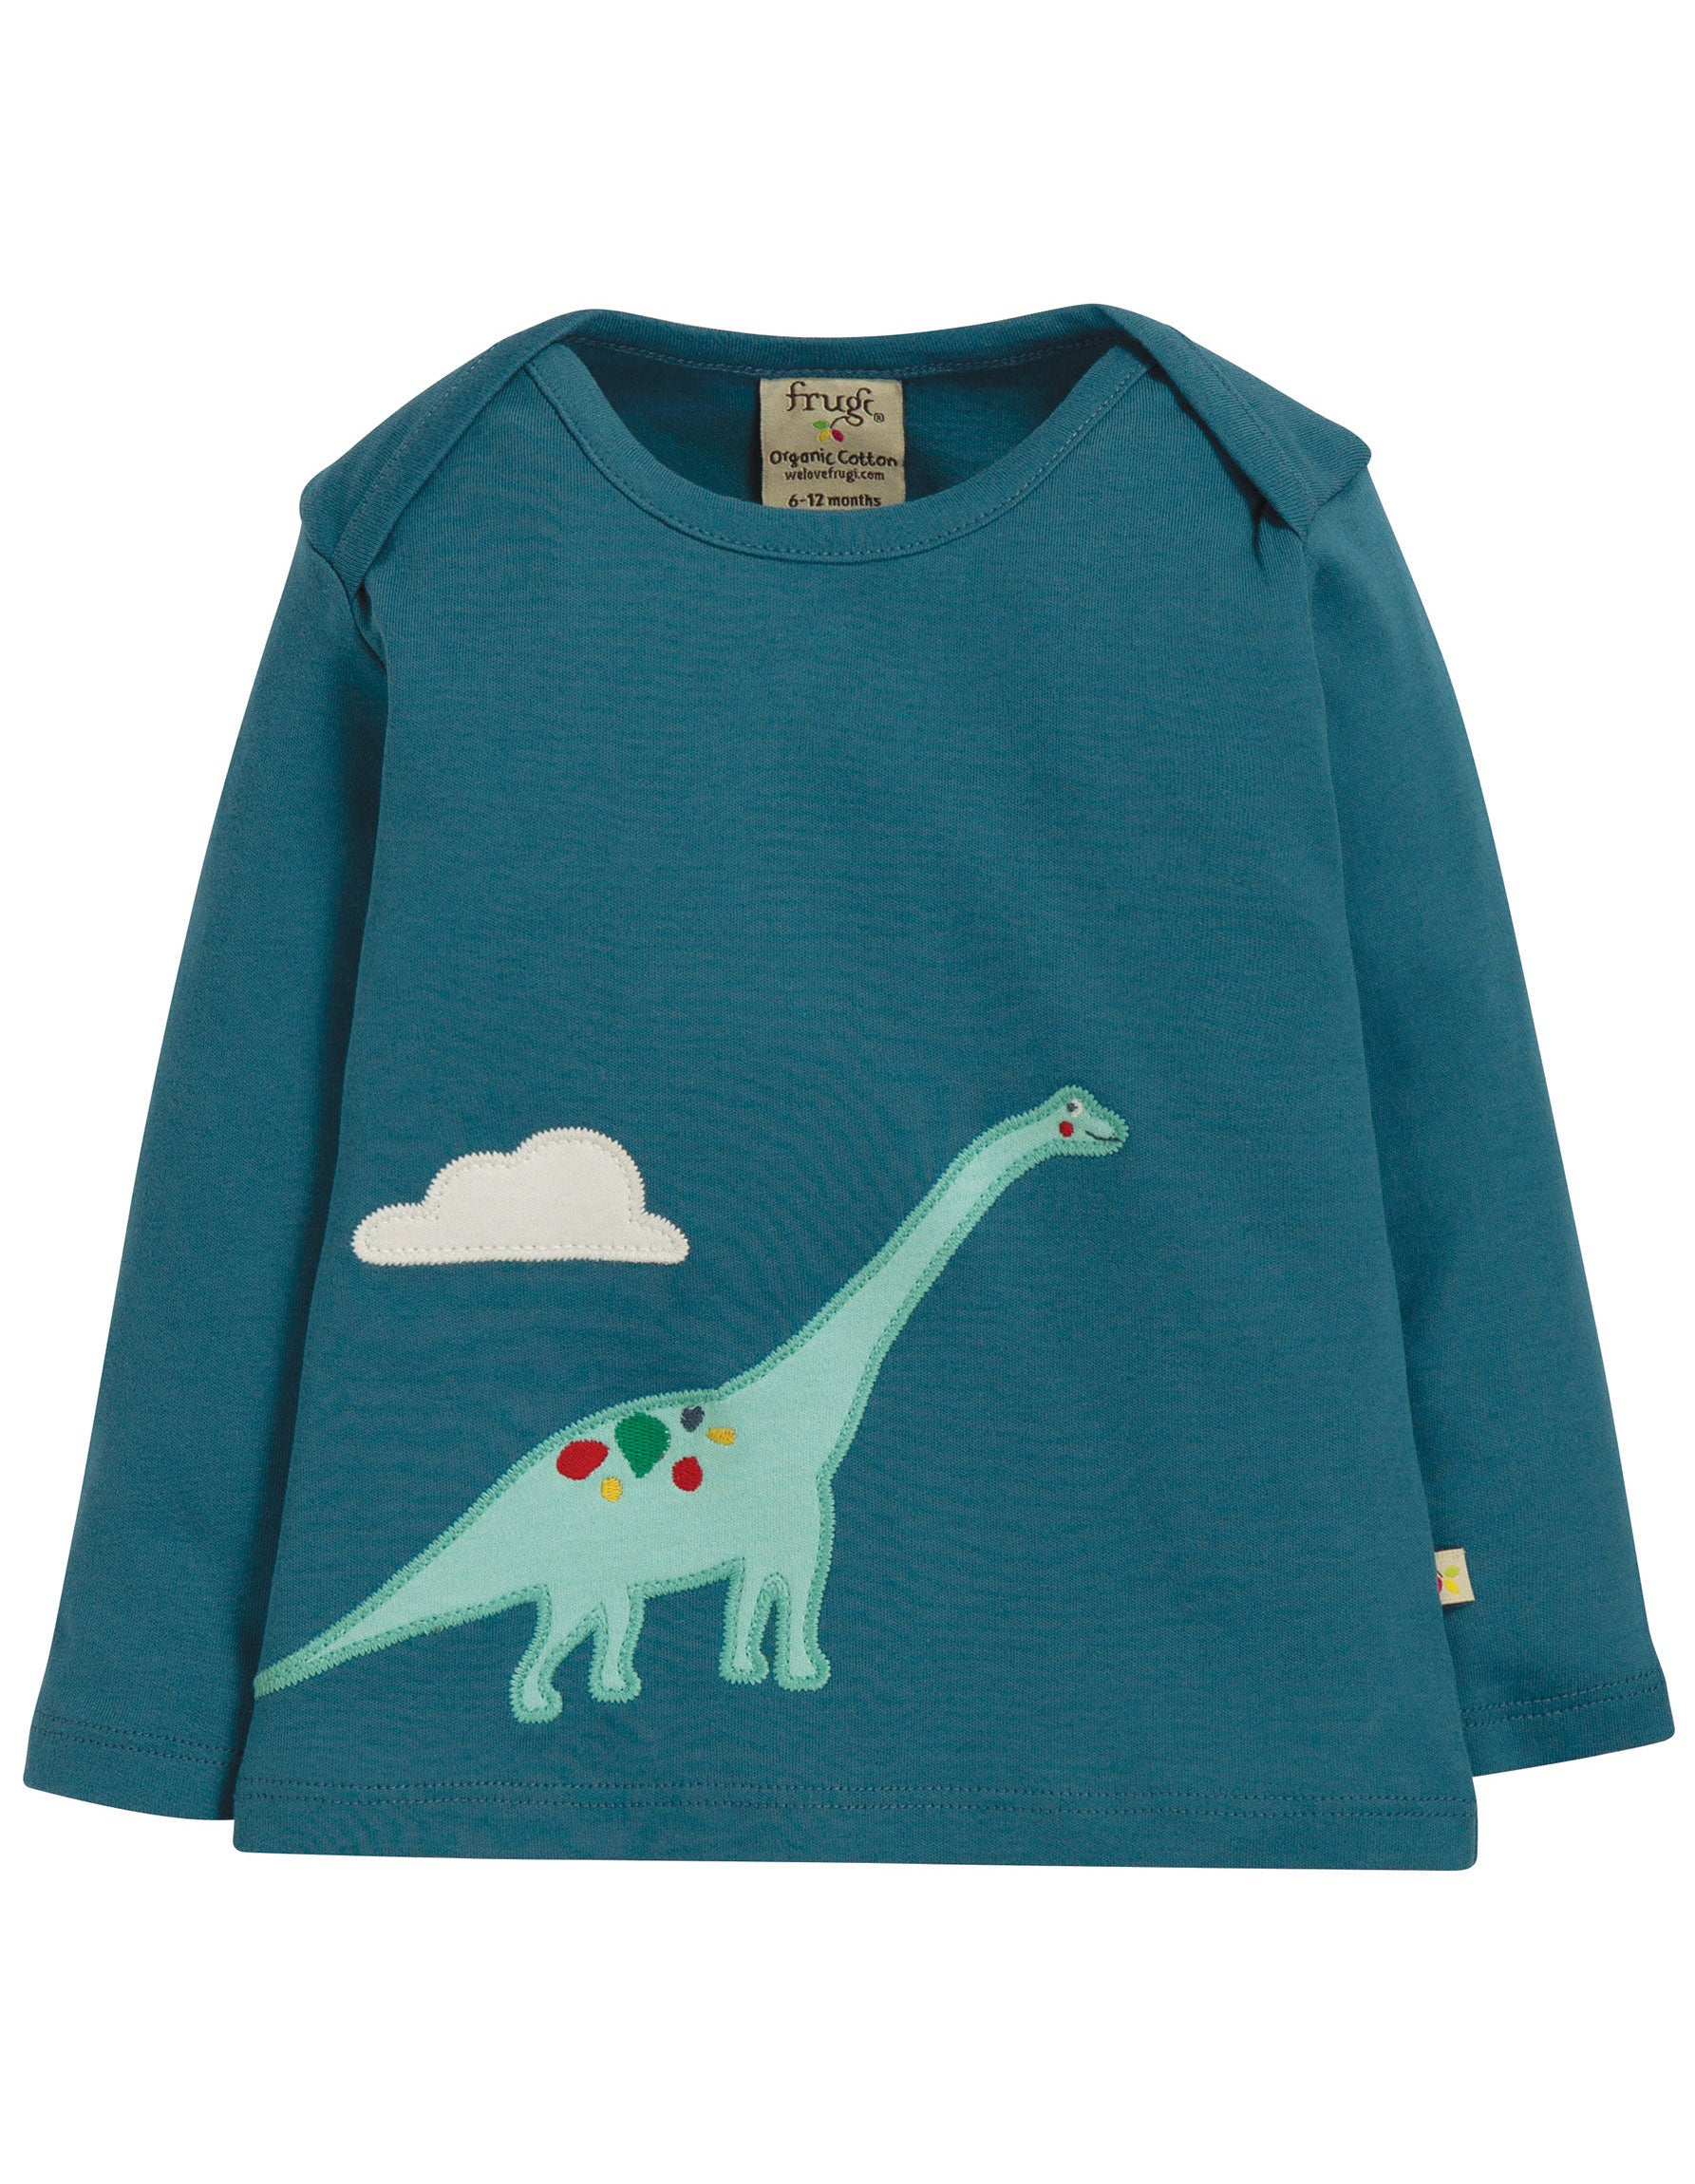 Shirt mit Dinosaurier applikation von der Marke Frugi